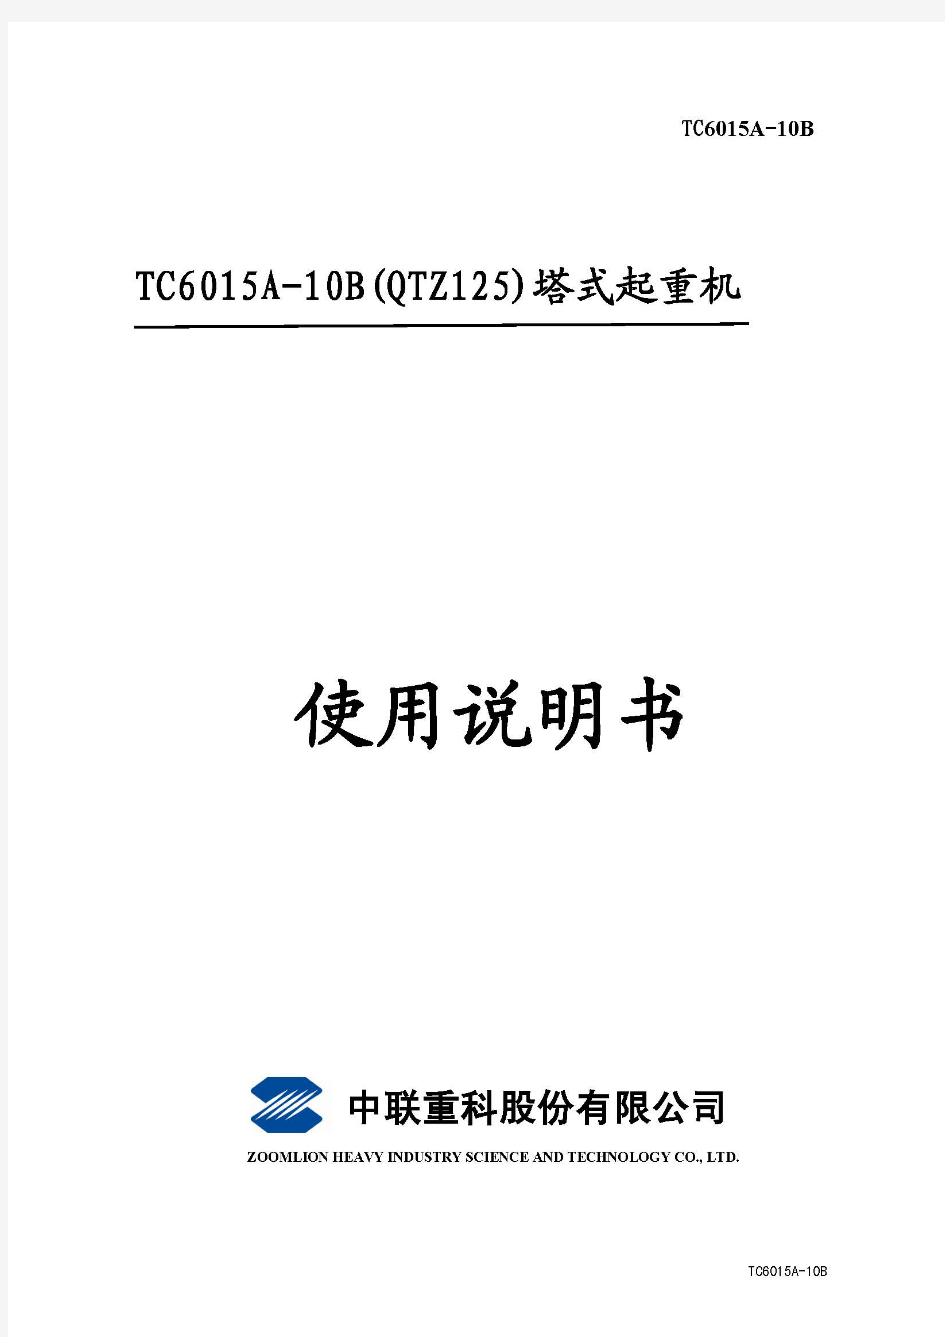 中联TC6015A-10B塔吊说明书